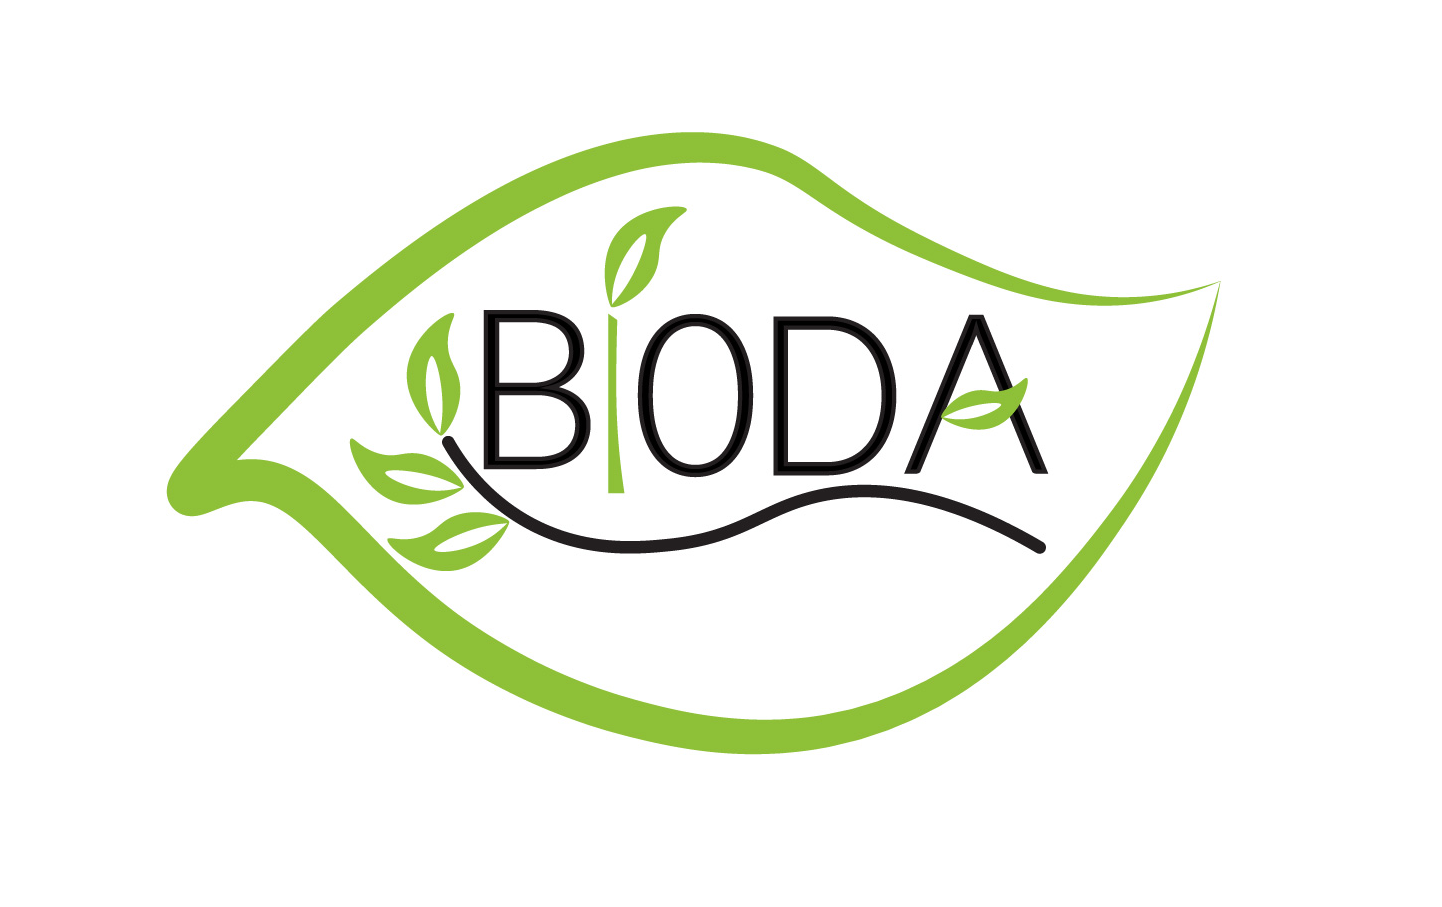 biodabg